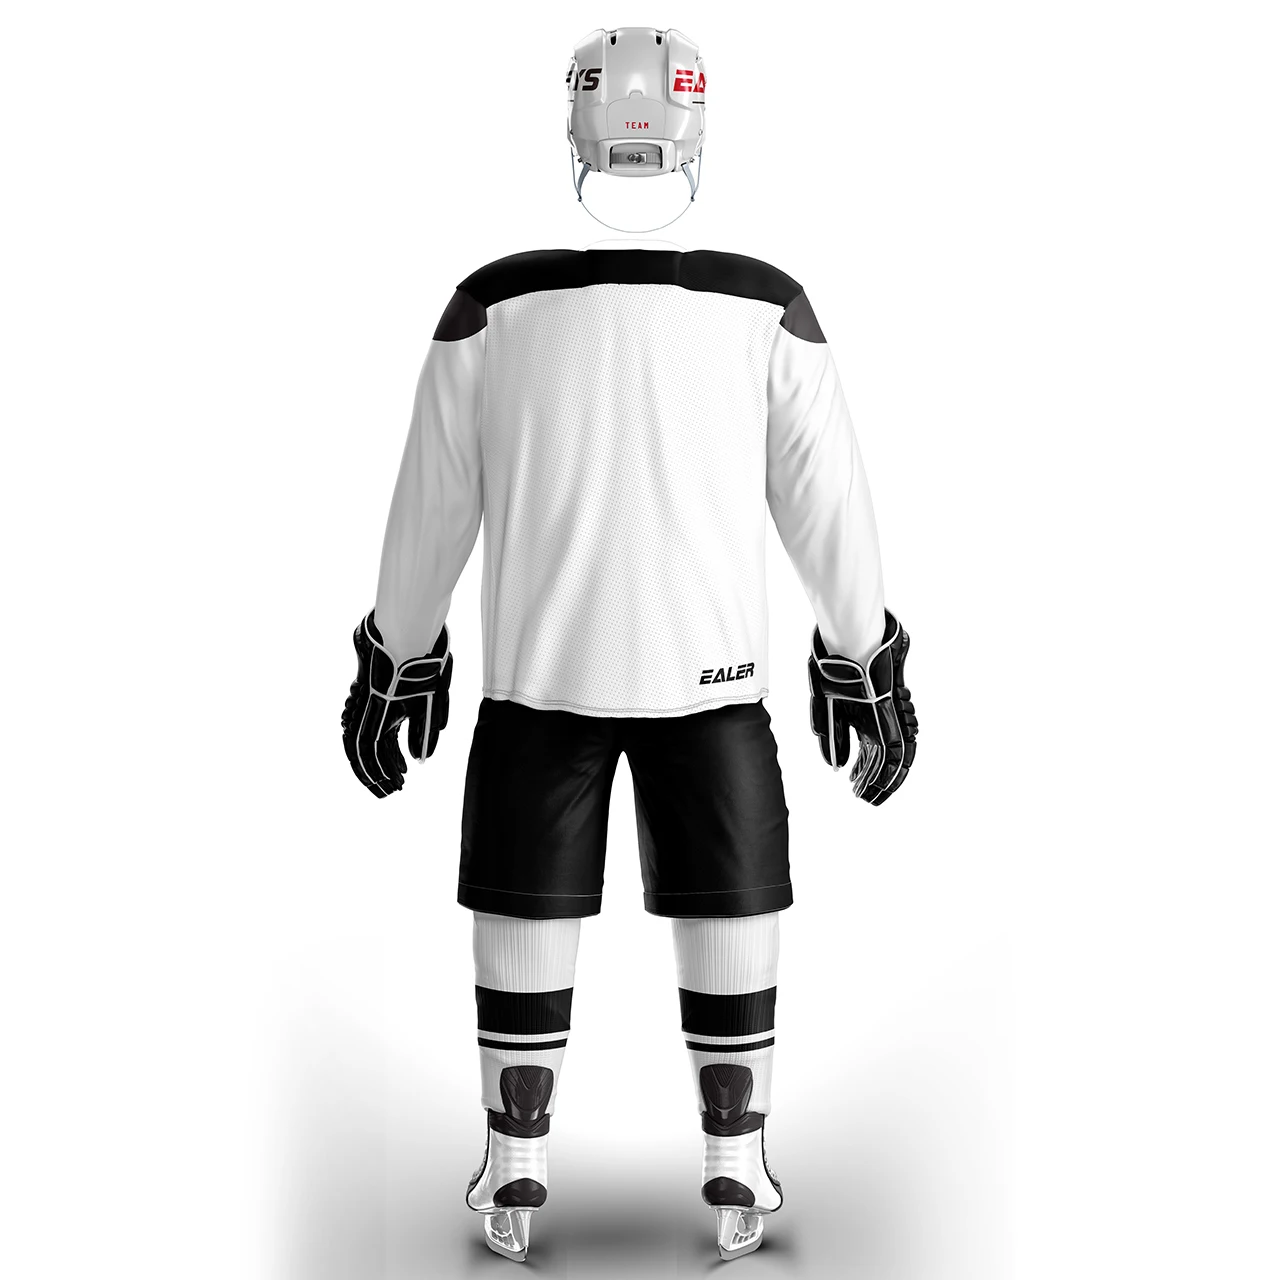 Coldоткрытом воздухе винтажные хоккейные тренировочные майки набор с принтом Oilers логотип пятно дешевые высокое качество H6100-9